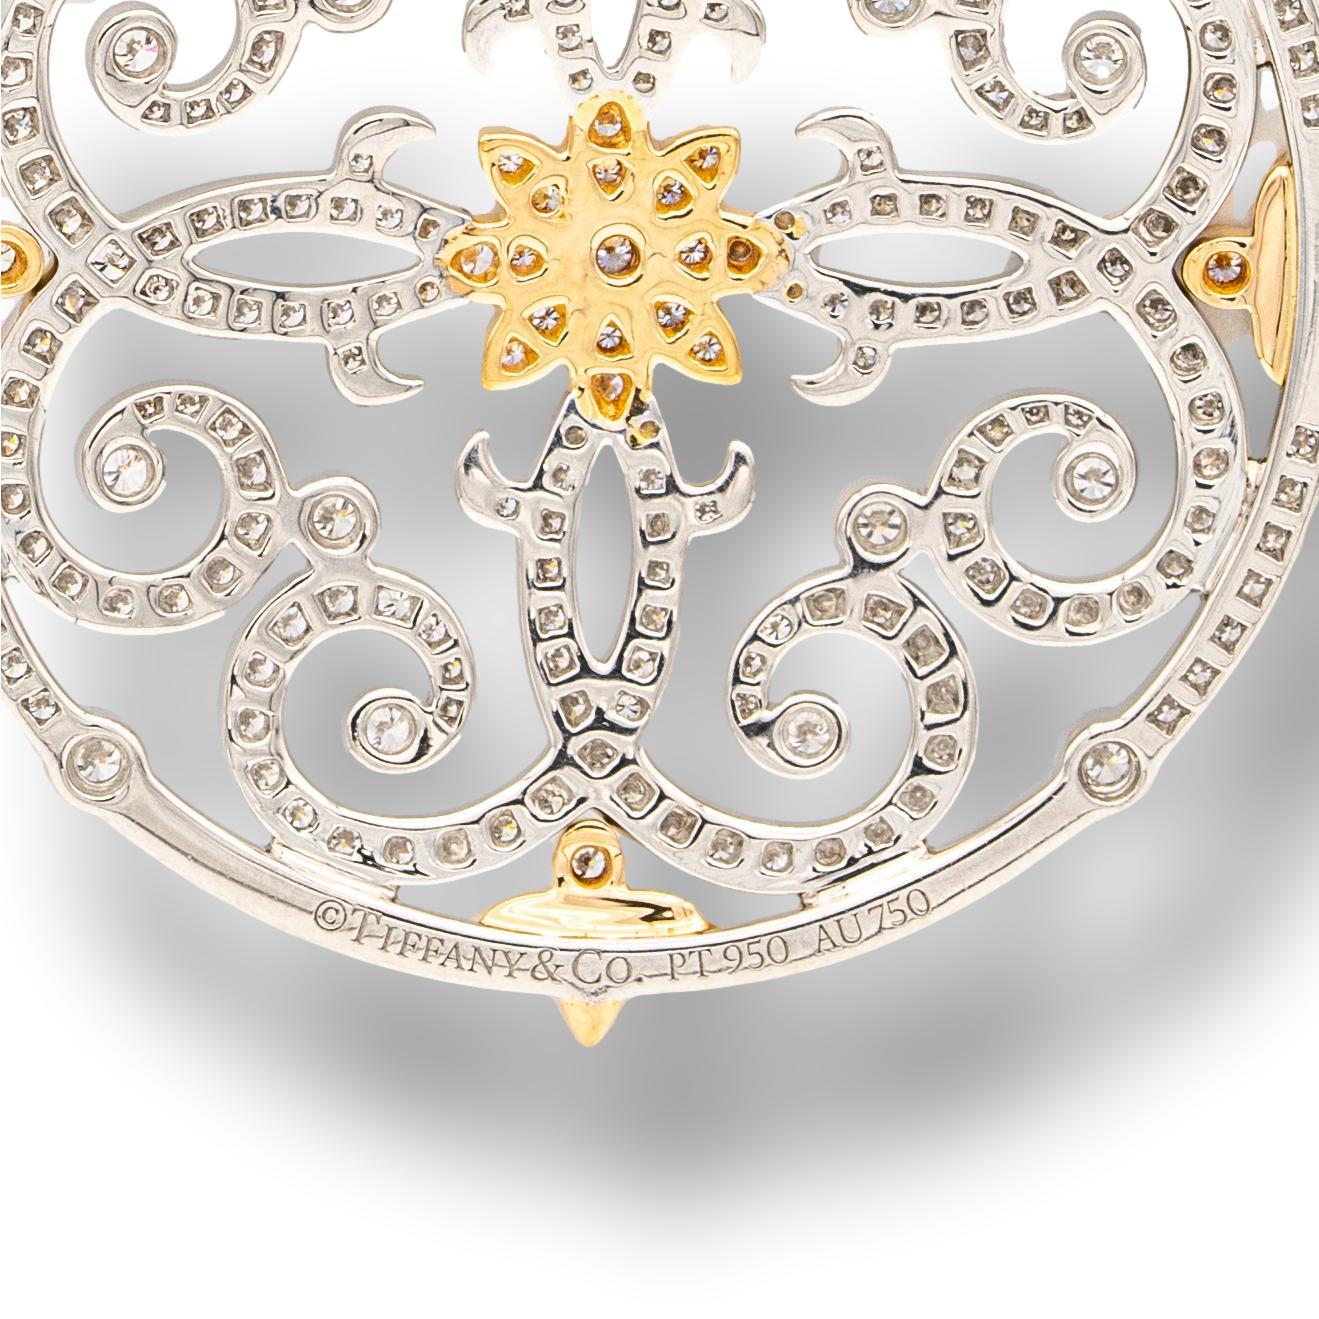 Tiffany & Co. diamond pendant from the 